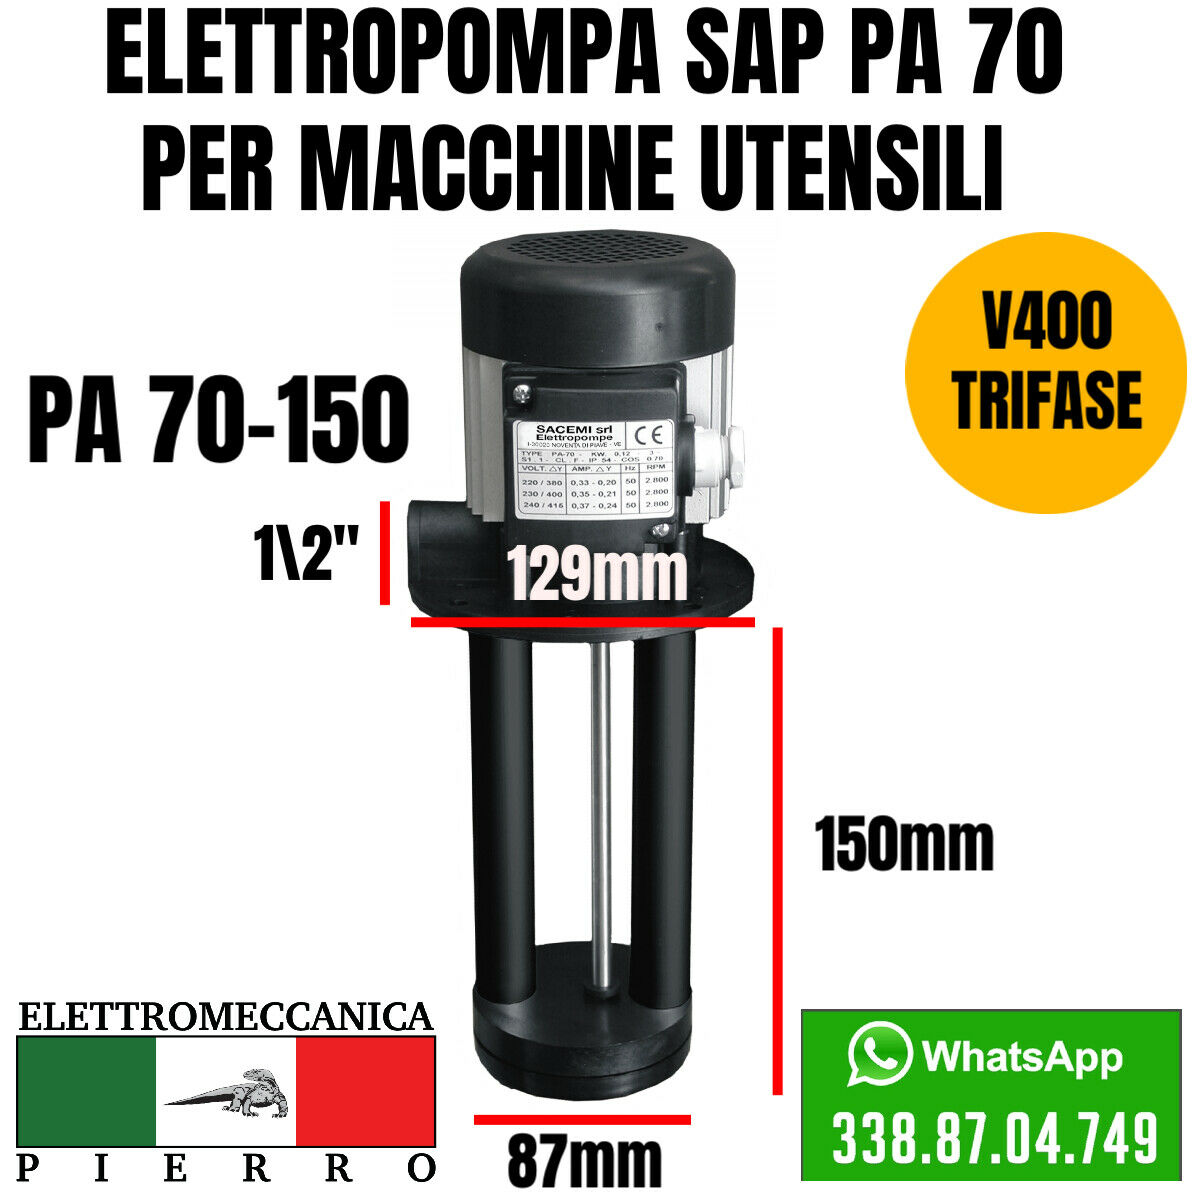 Logo elettromeccanica Pierro elettromeccanica express Elettropompa sacemi per macchine utensili SAP PA 70-150